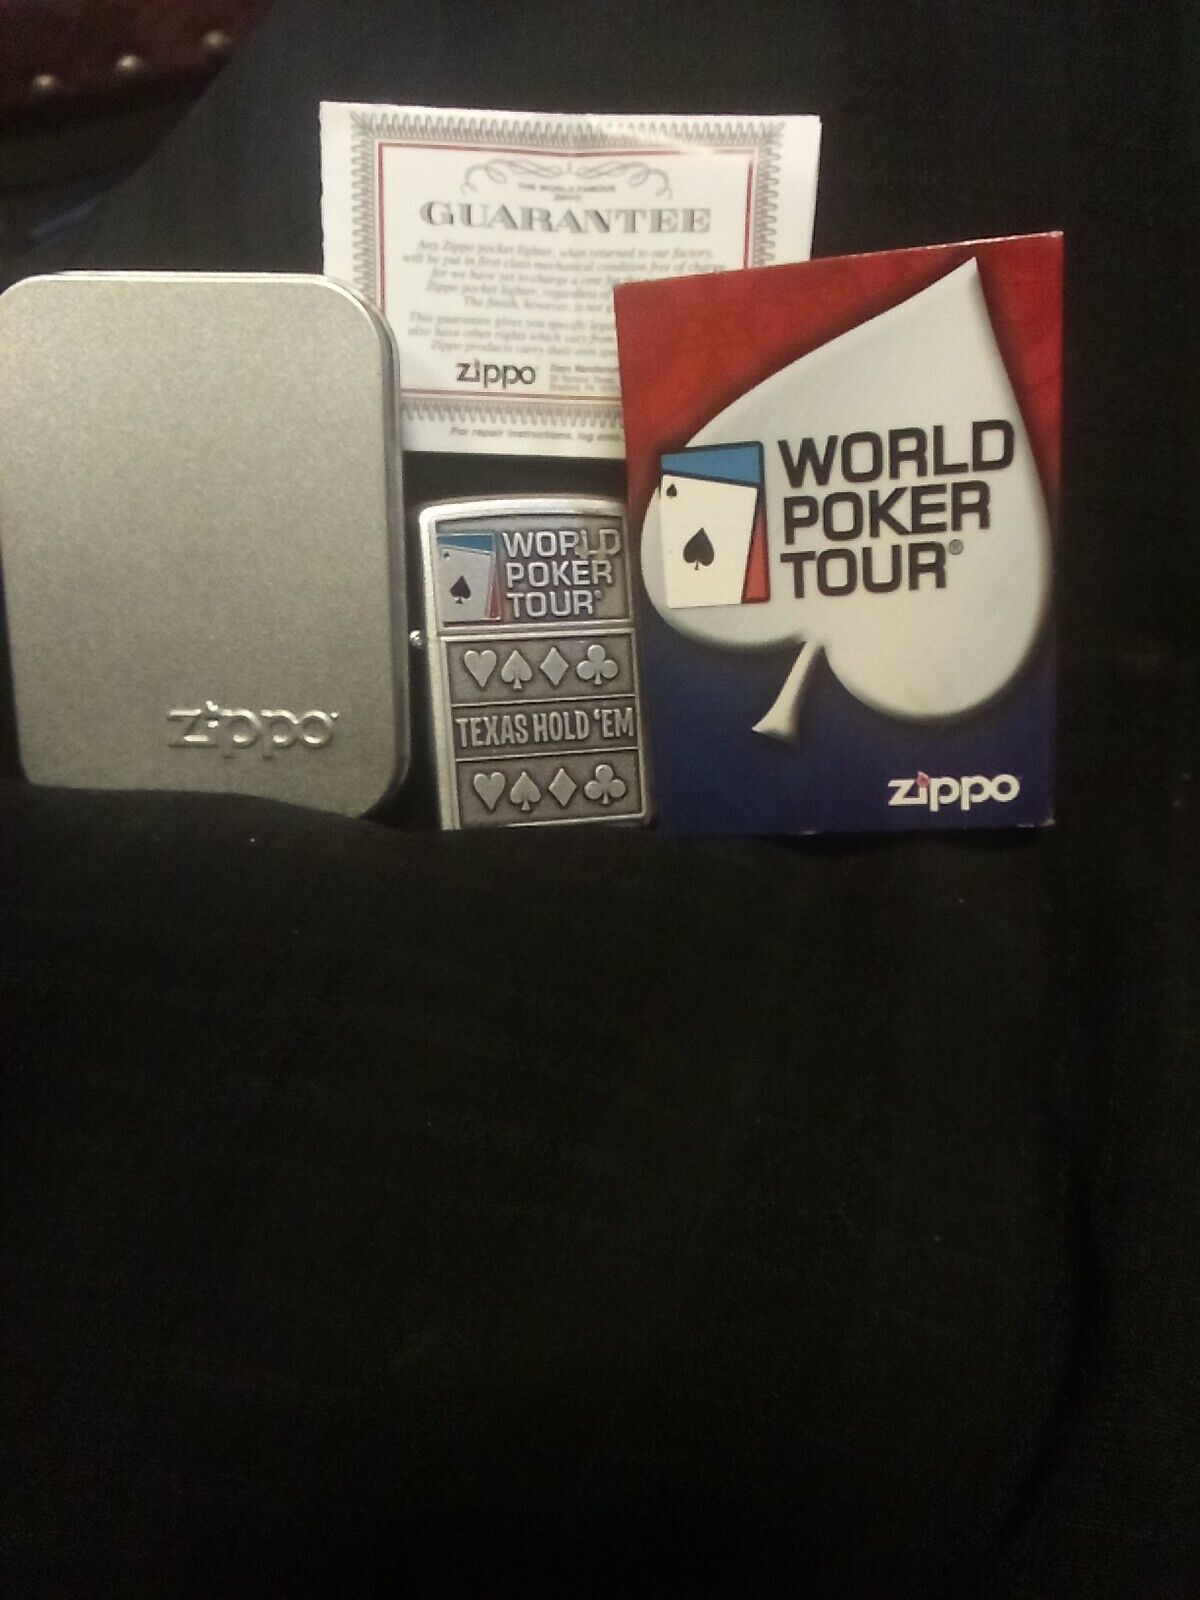 2009 World Poker Tour Zippo Lighter \